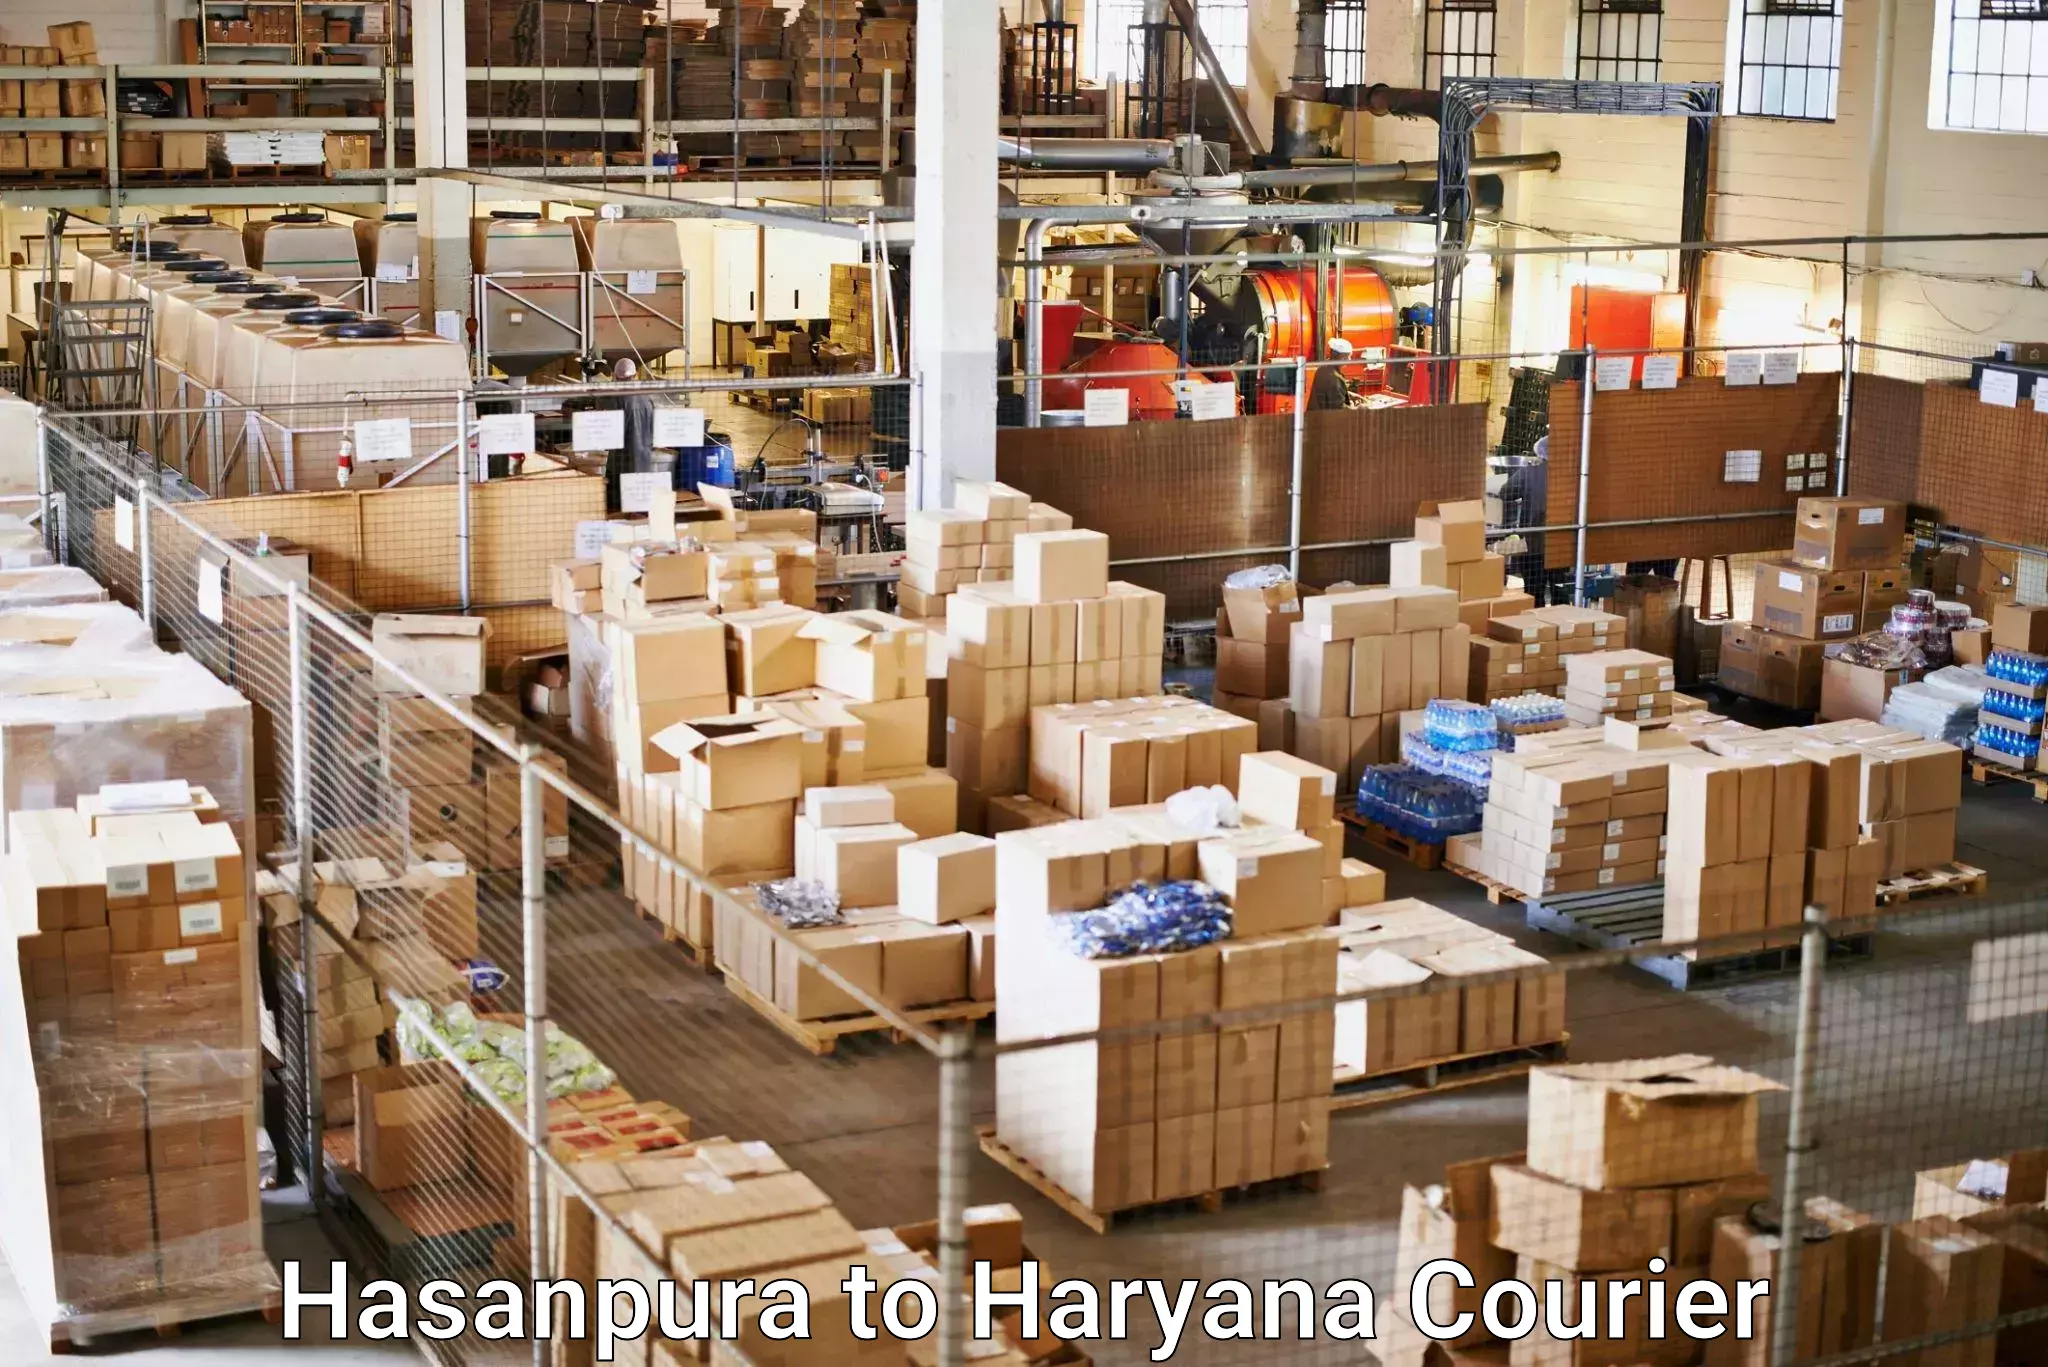 International courier rates in Hasanpura to IIIT Sonepat